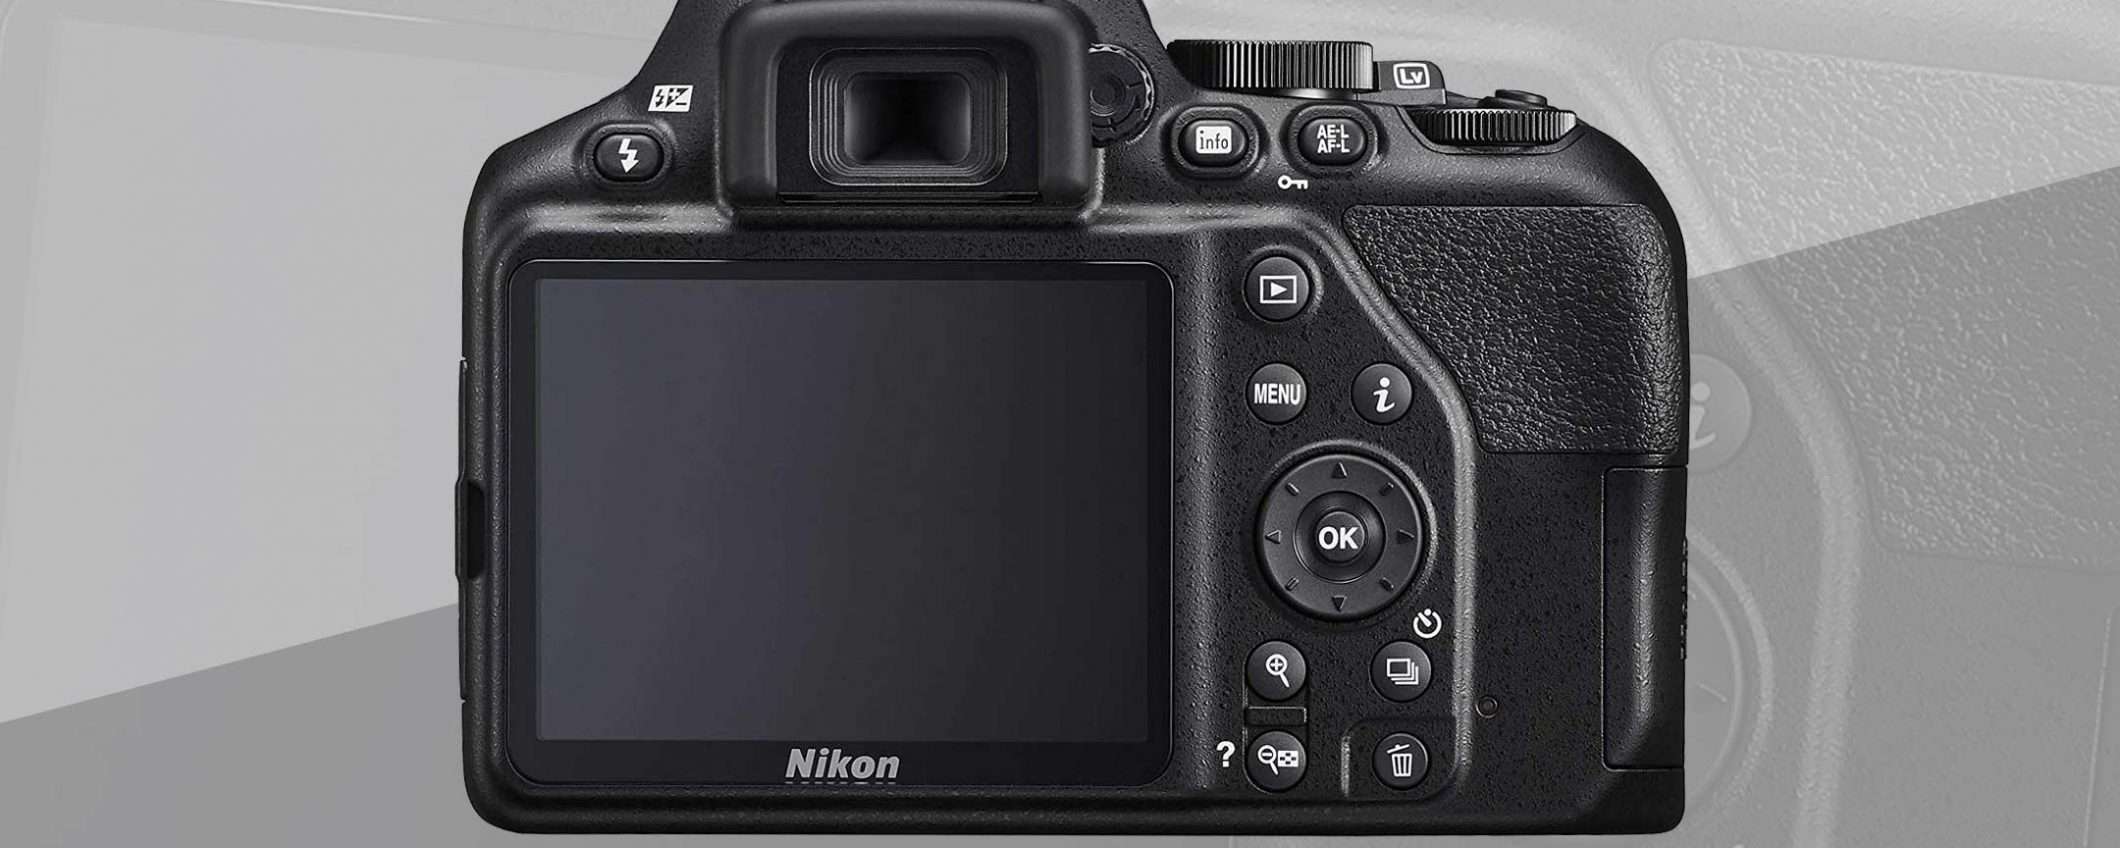 Nikon D3500 e 18-140 in offerta nel Black Friday